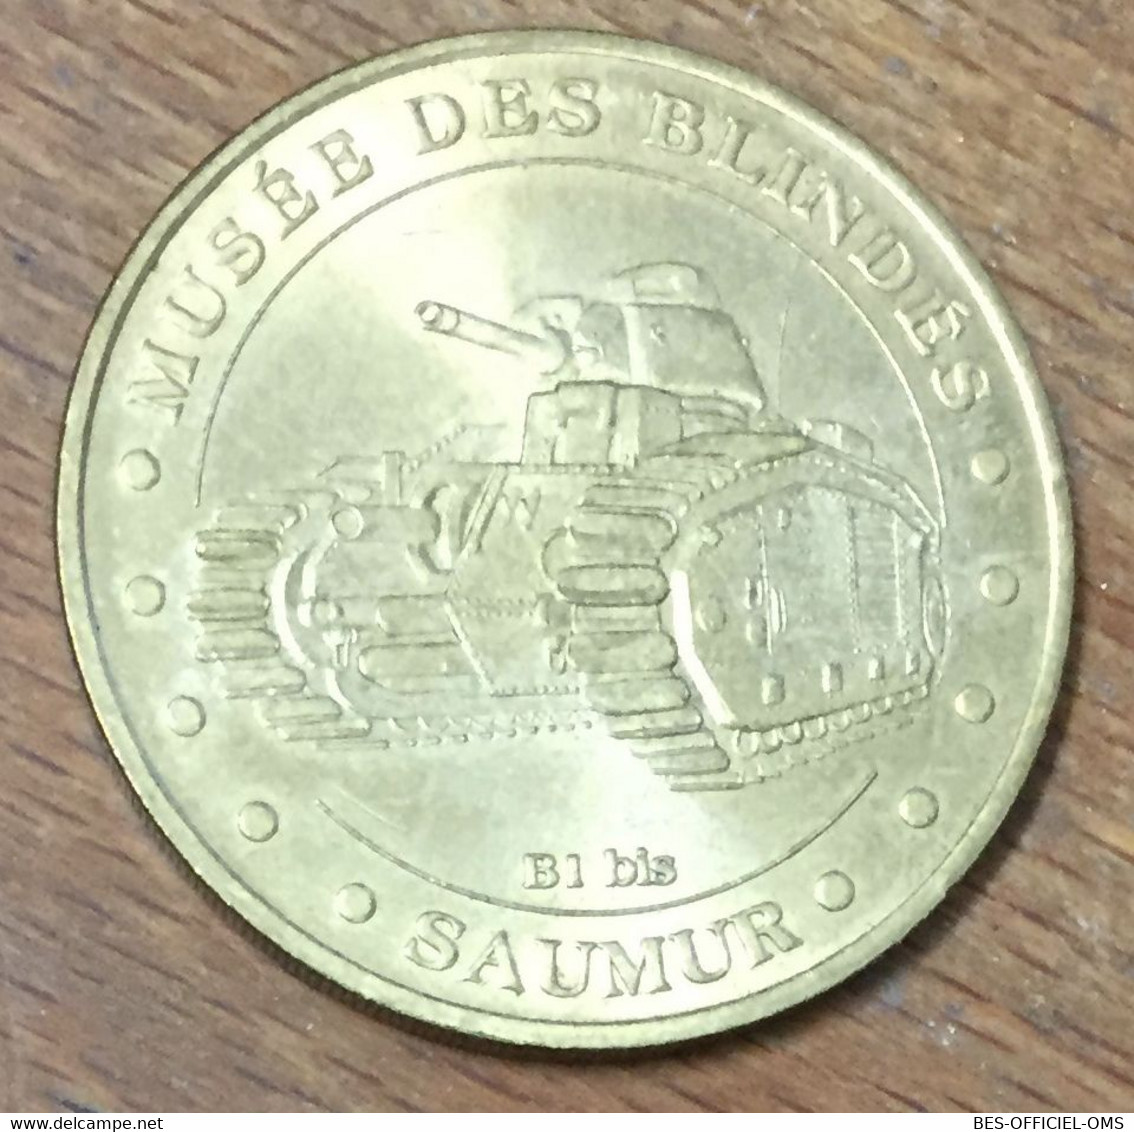 49 SAUMUR CHAR B1 BIS 39/45 WW MDP 2005 MÉDAILLE SOUVENIR MONNAIE DE PARIS JETON TOURISTIQUE TOKEN MEDALS COINS - 2005